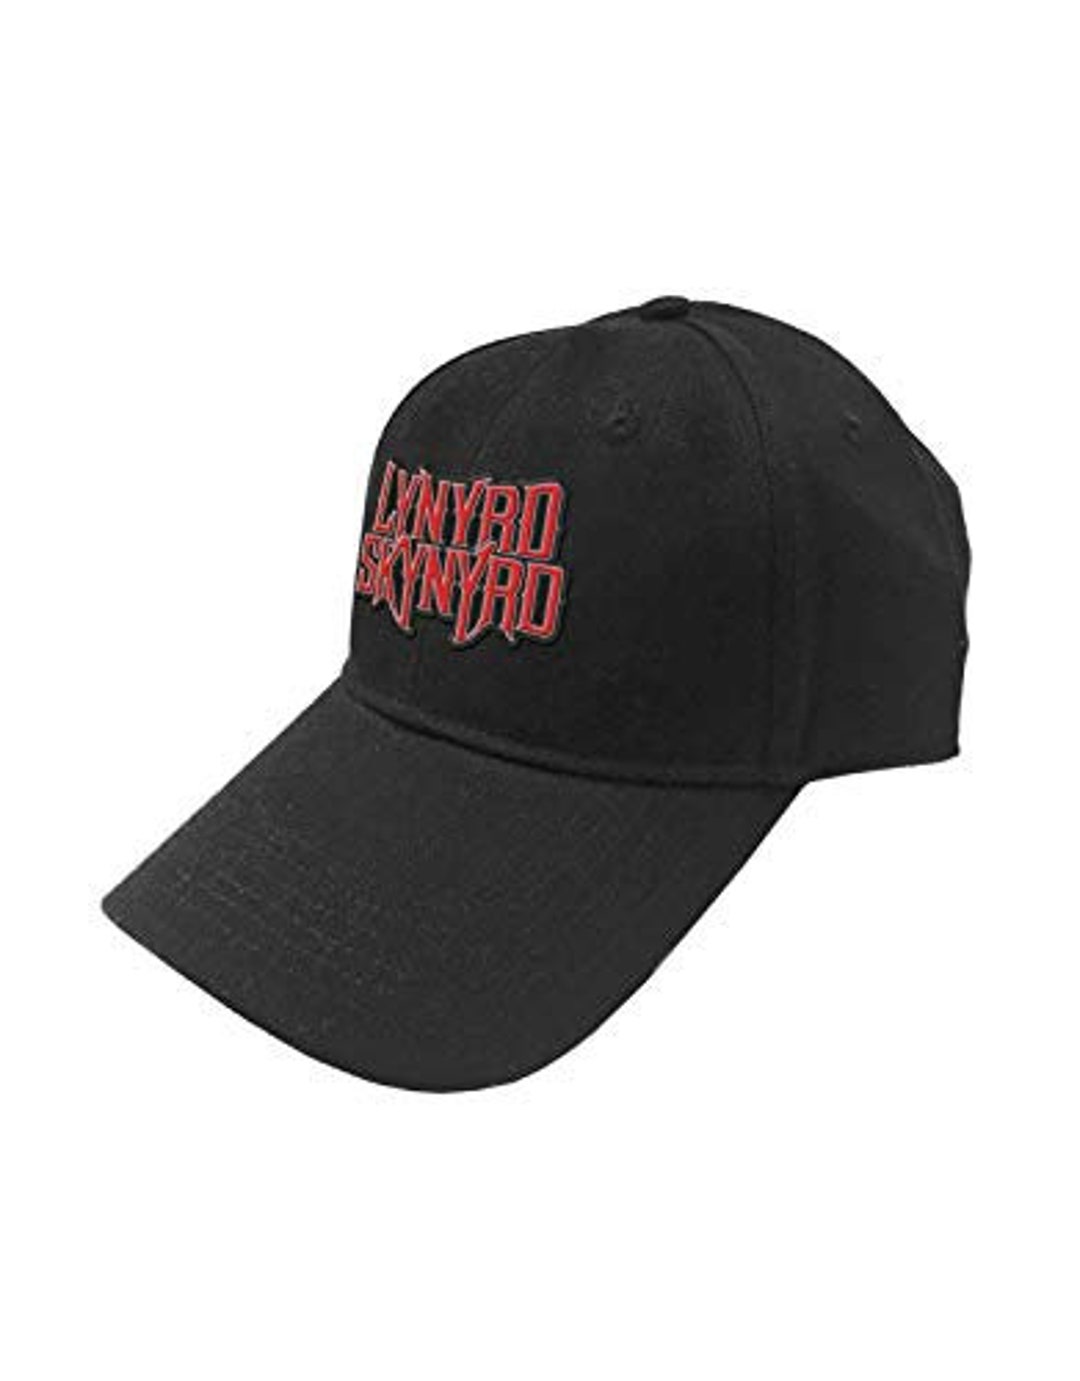 Lynyrd Skynyrd Hat Baseball Cap Officially Licensed Skynyrd Merch ...